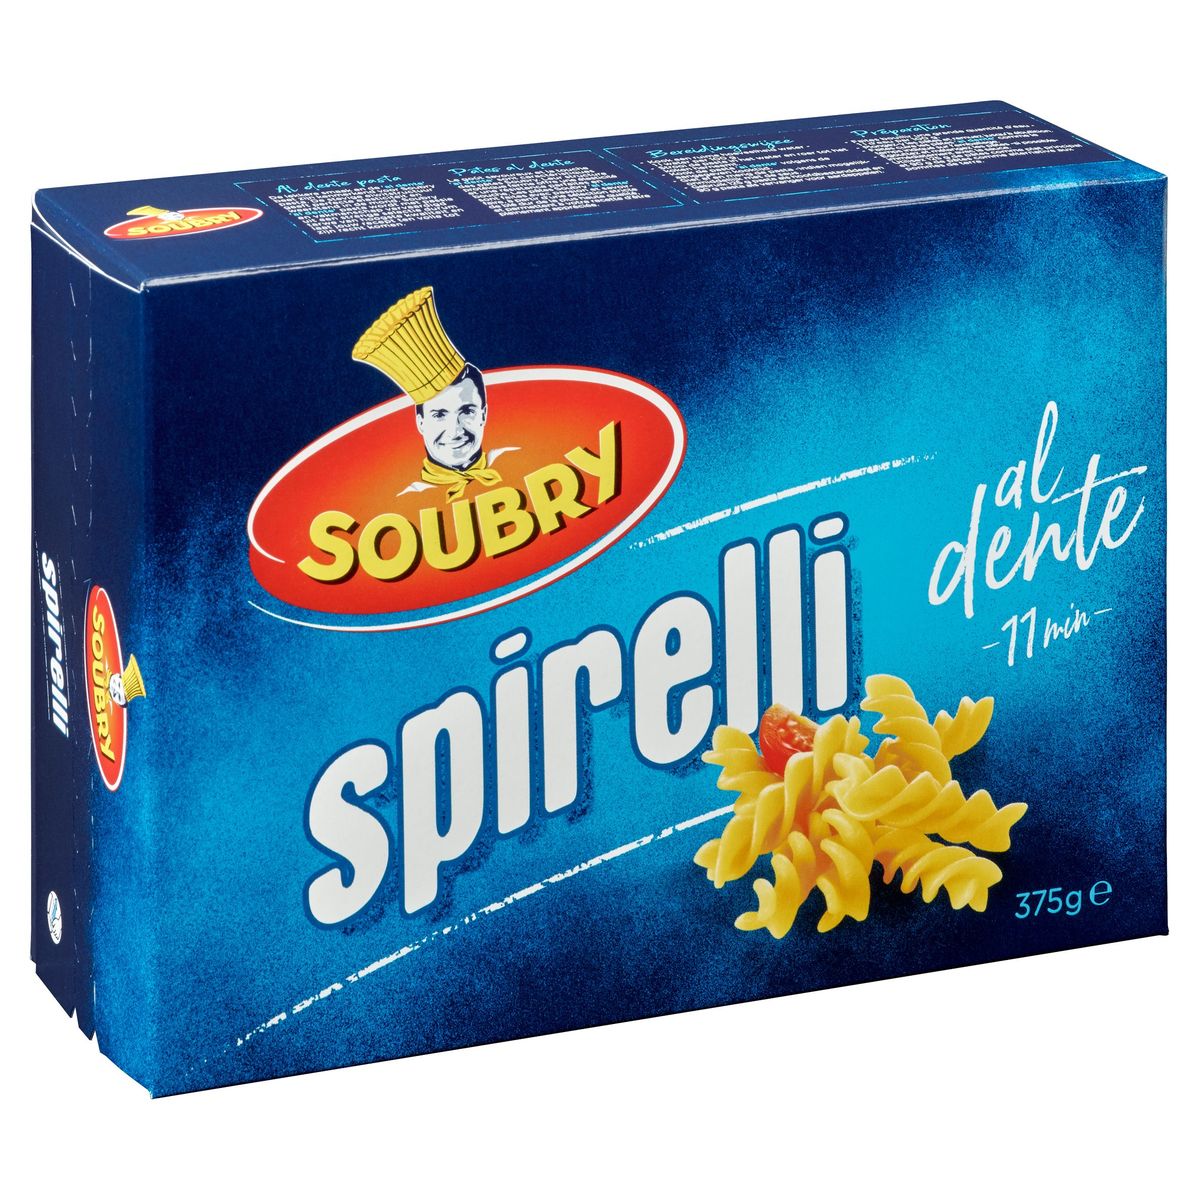 Soubry Pasta Spirelli 375g